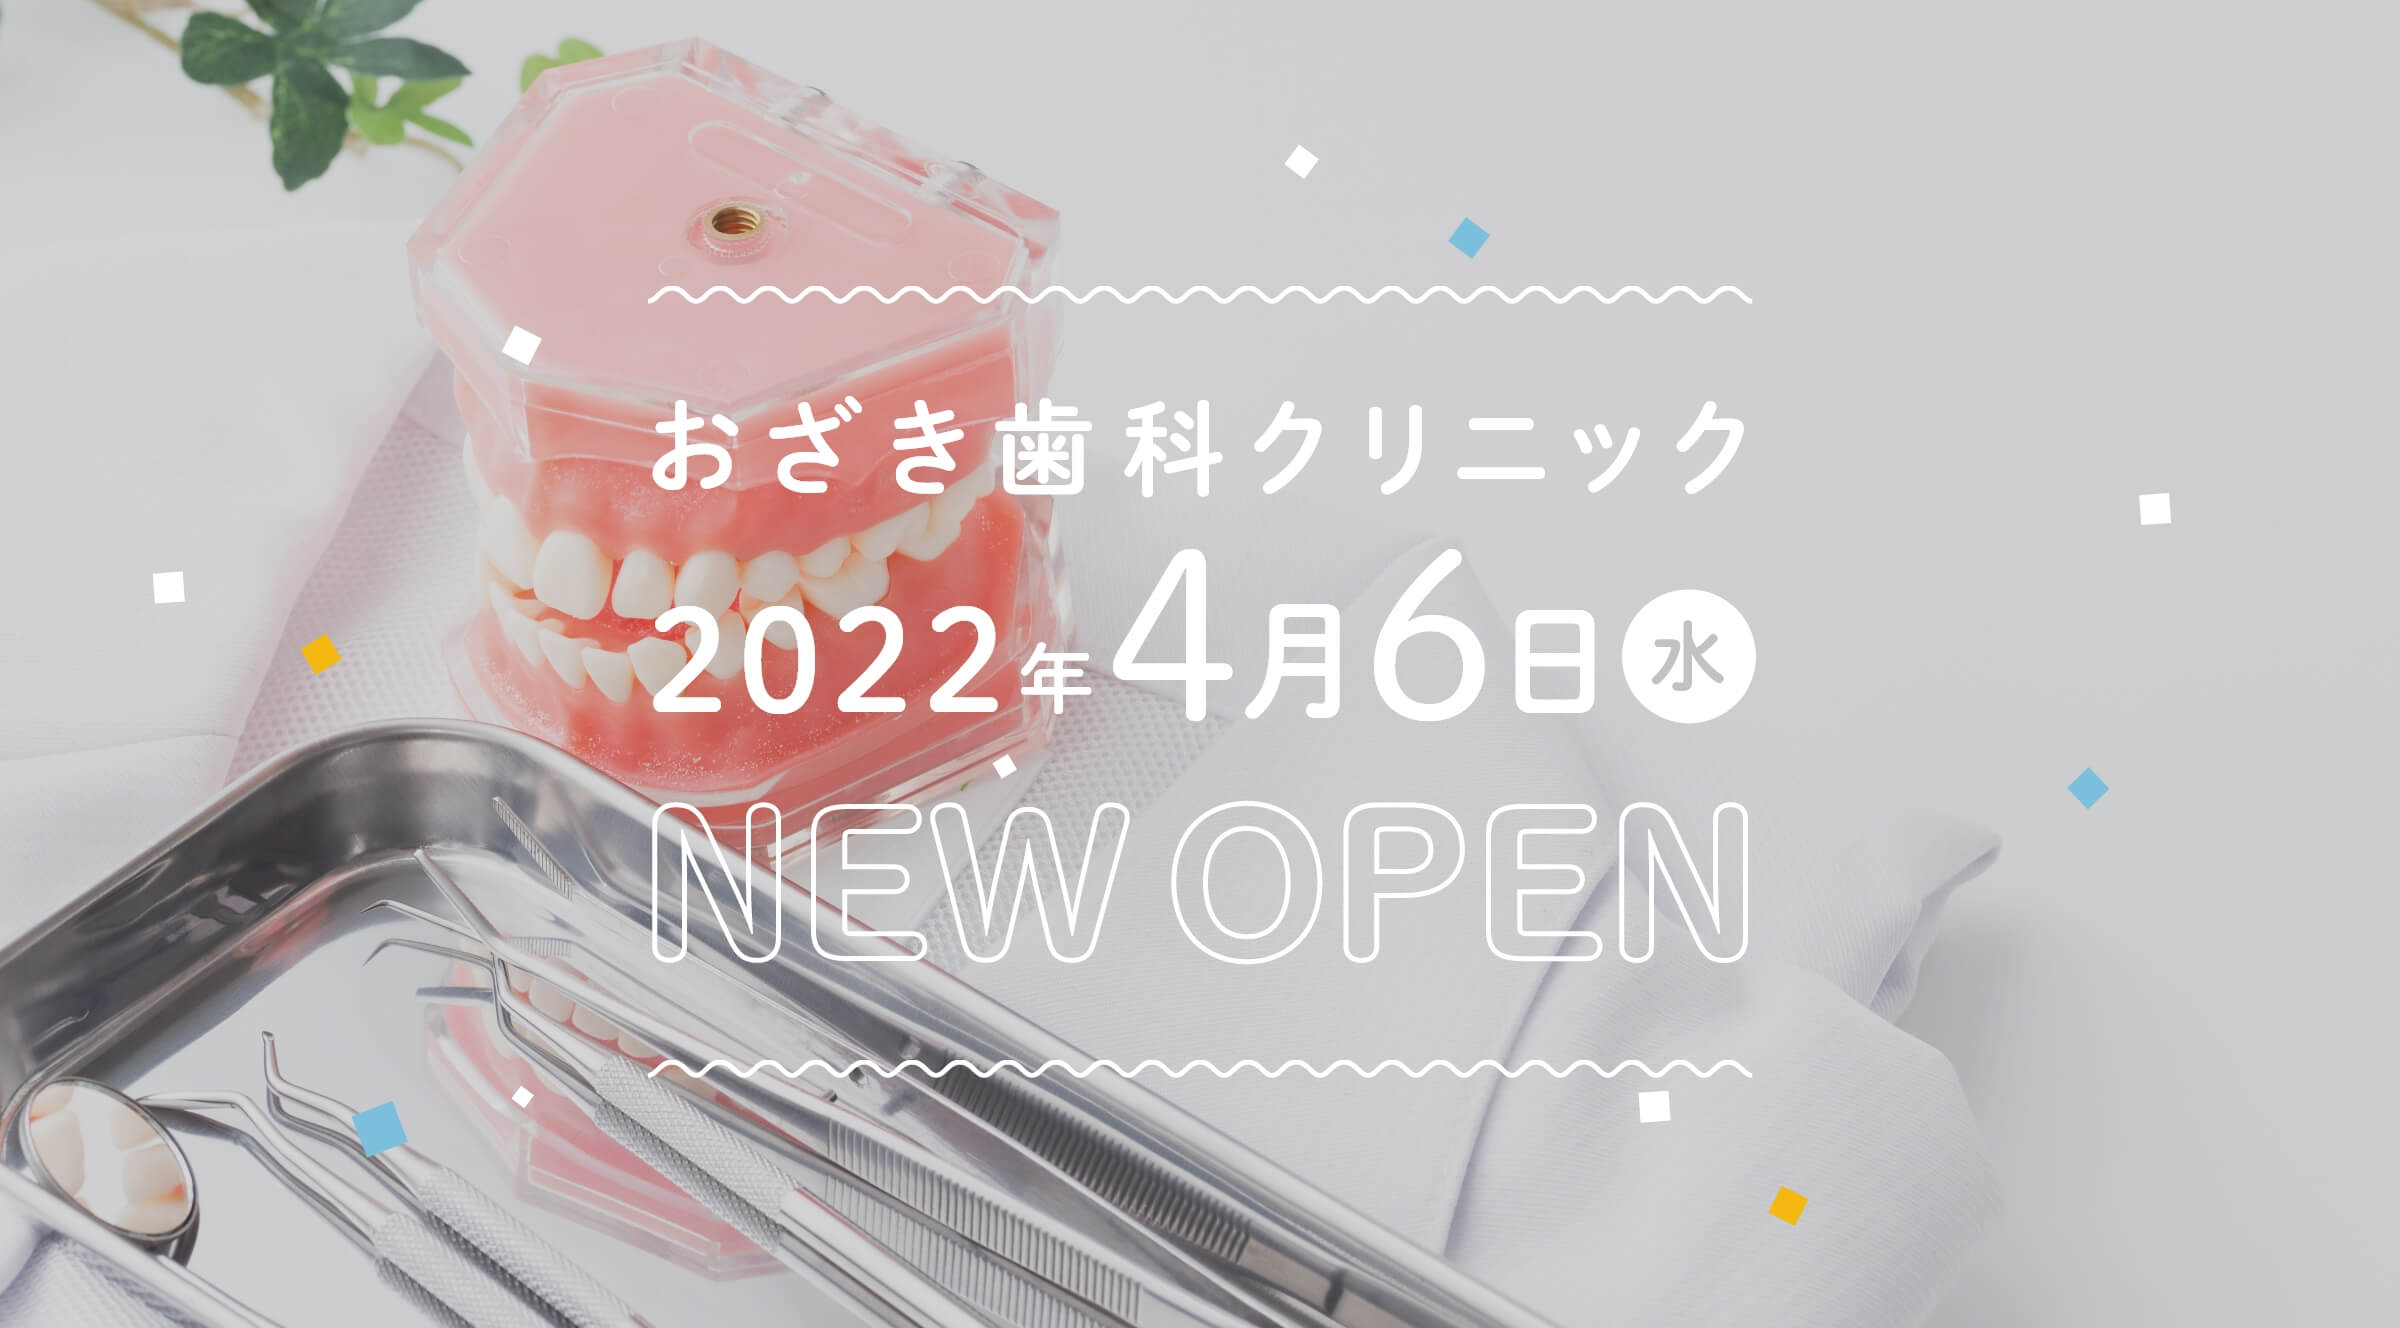 おざき歯科クリニック 2022年 4月7日木 new open